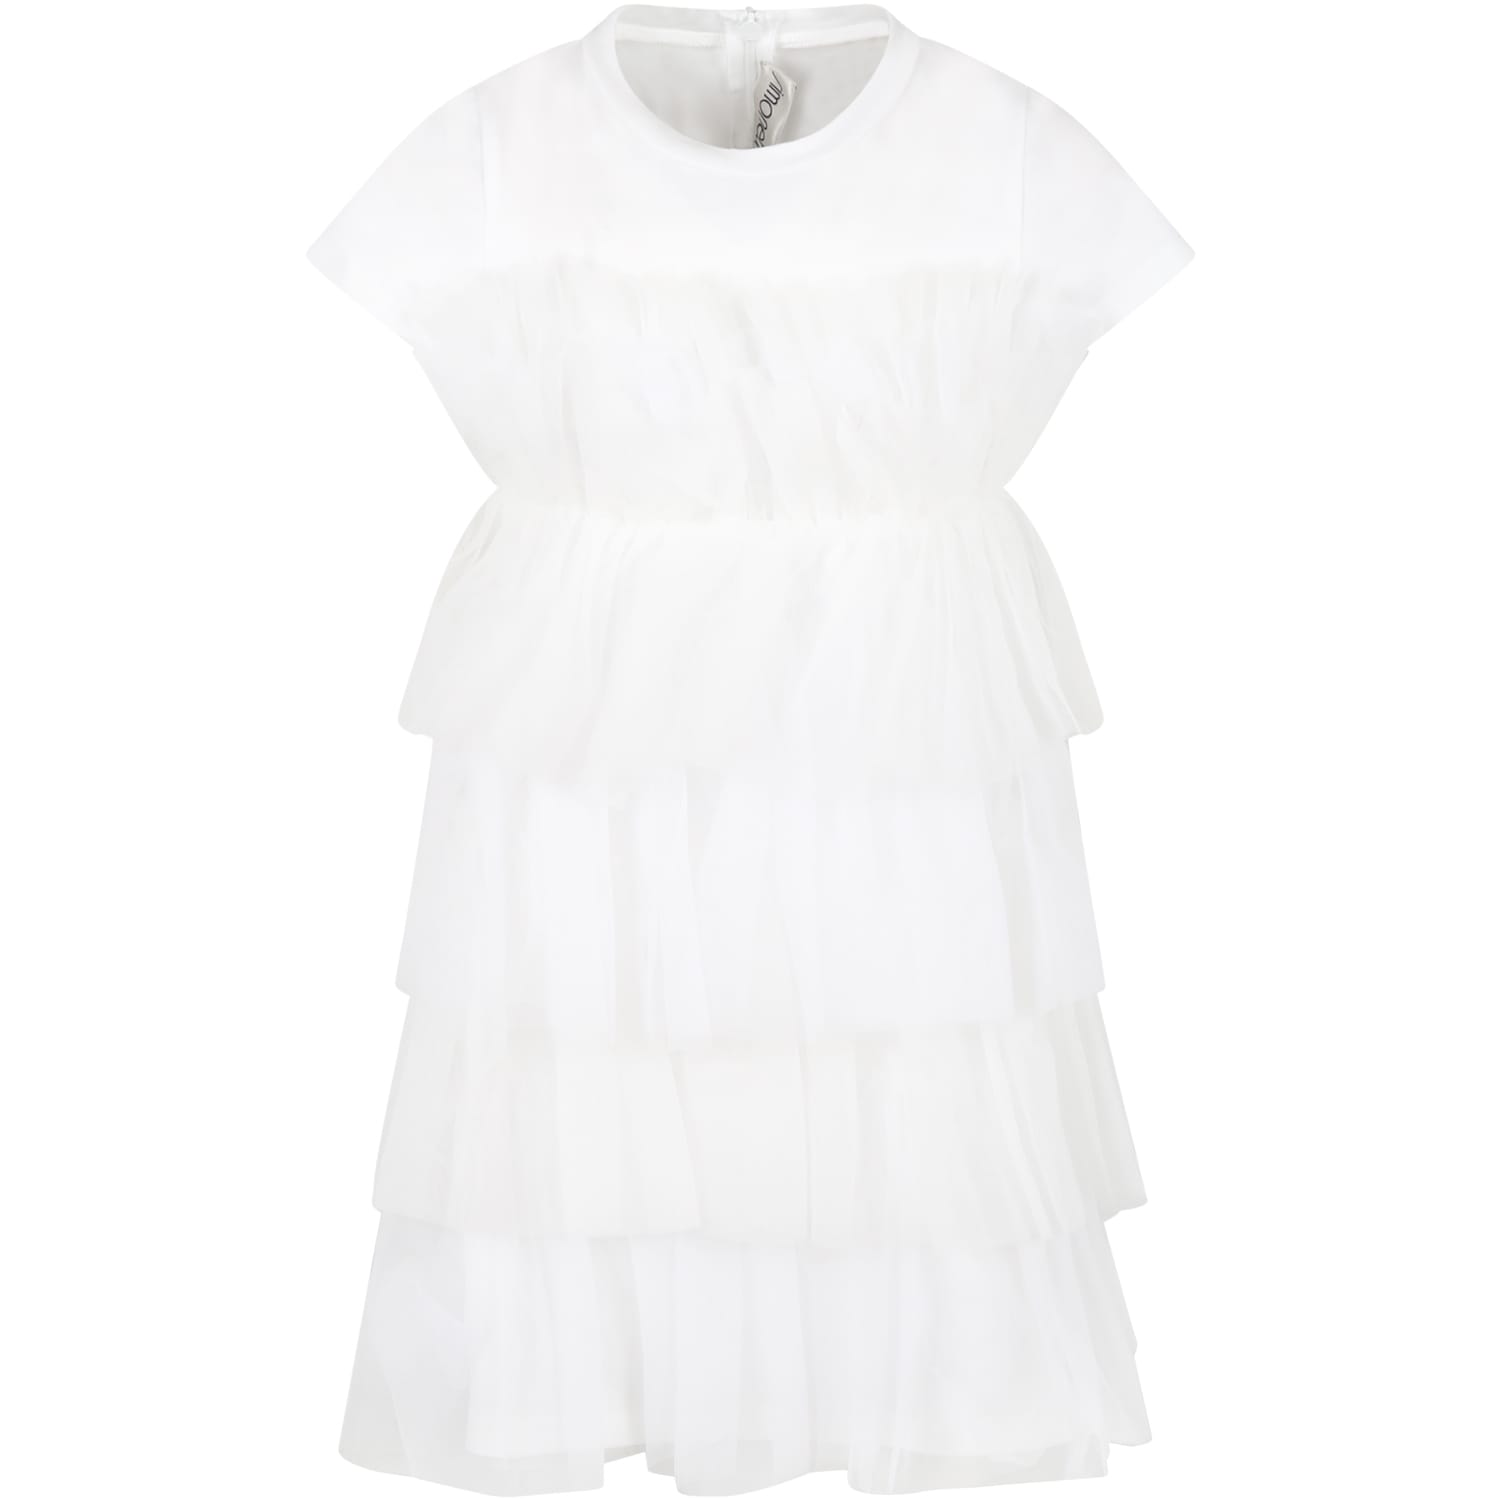 Simonetta White Dress For Girl With Ruffles